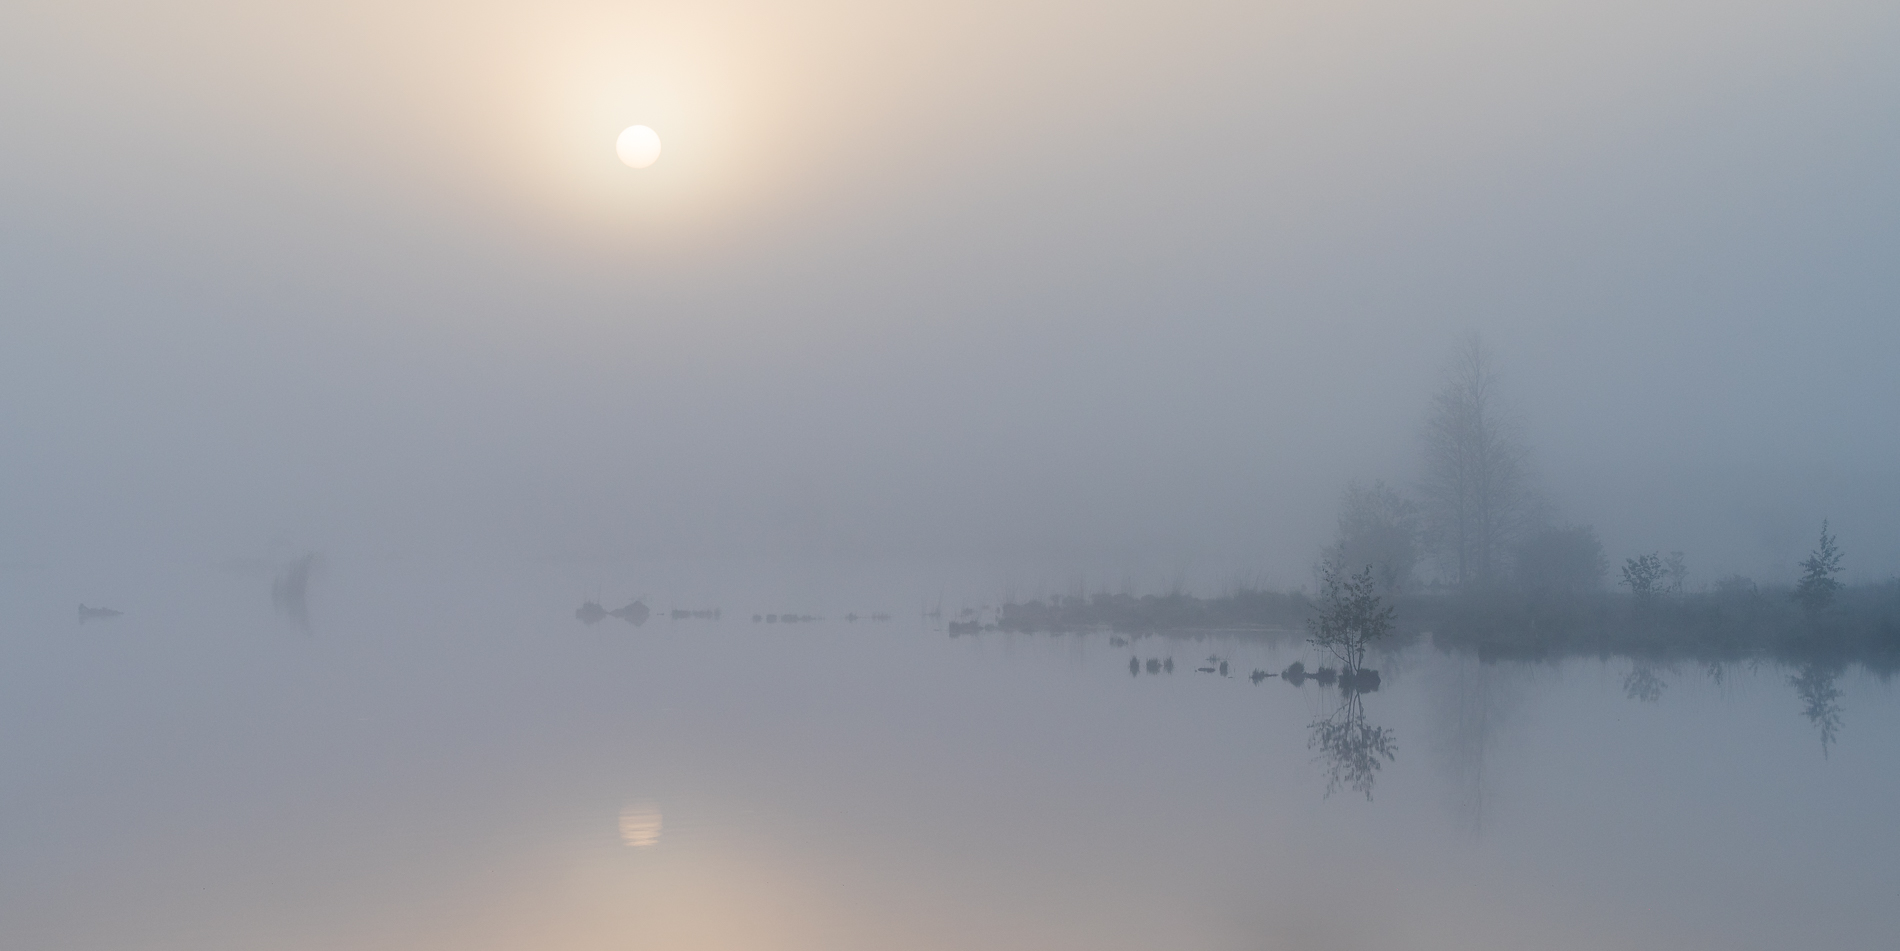 __foggy sunrise__